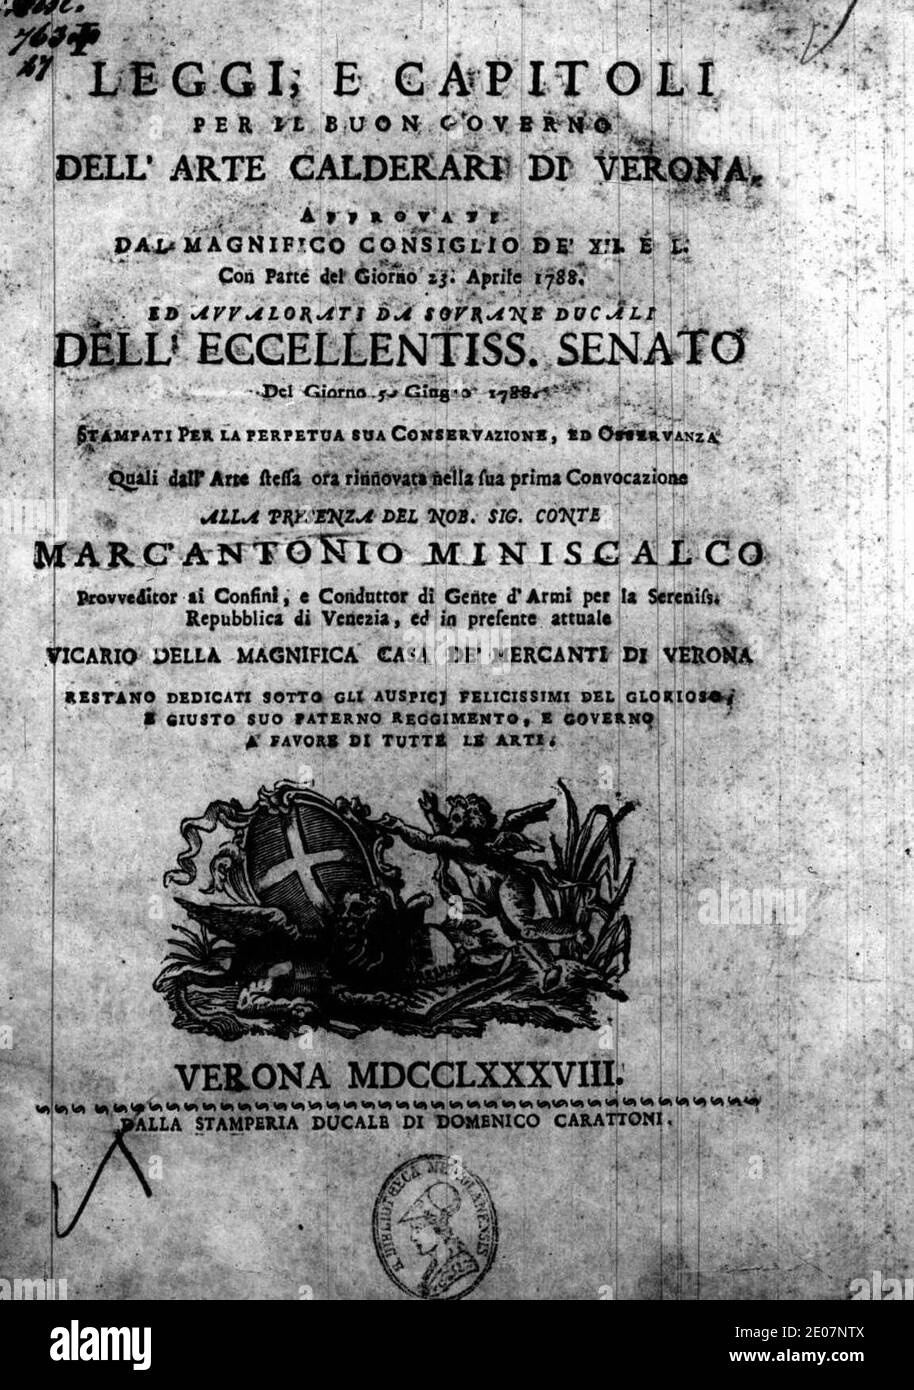 Leggi, e capitoli per il buon governo dell'arte calderari di Verona, 1788 – BEIC 15157127. Stockfoto